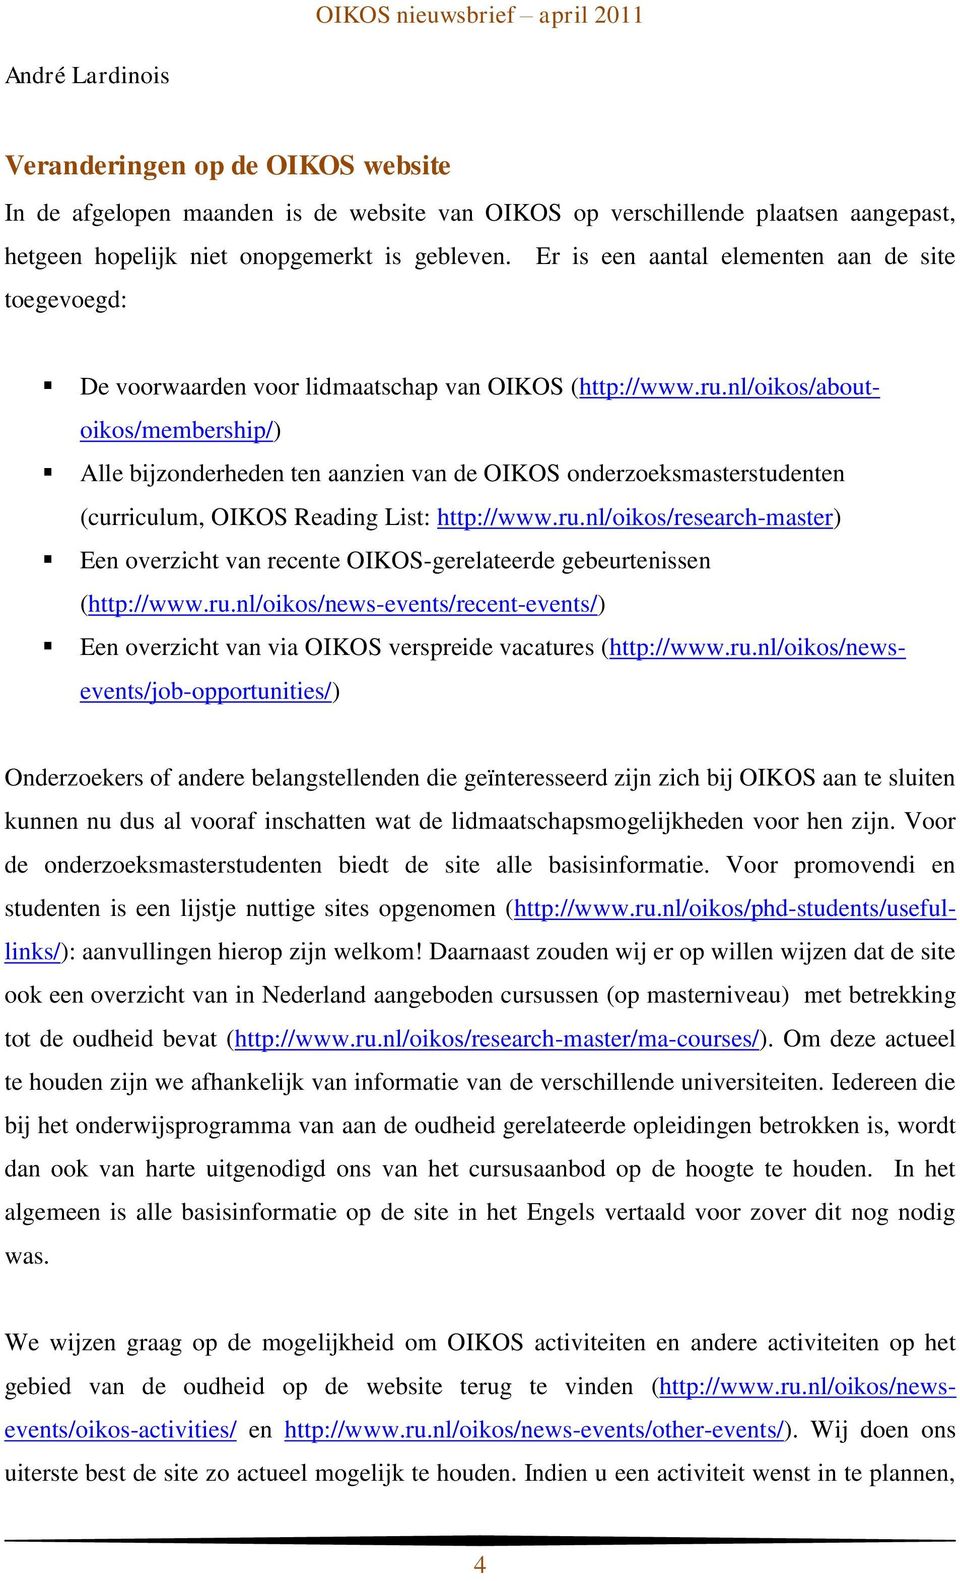 nl/oikos/aboutoikos/membership/) Alle bijzonderheden ten aanzien van de OIKOS onderzoeksmasterstudenten (curriculum, OIKOS Reading List: http://www.ru.